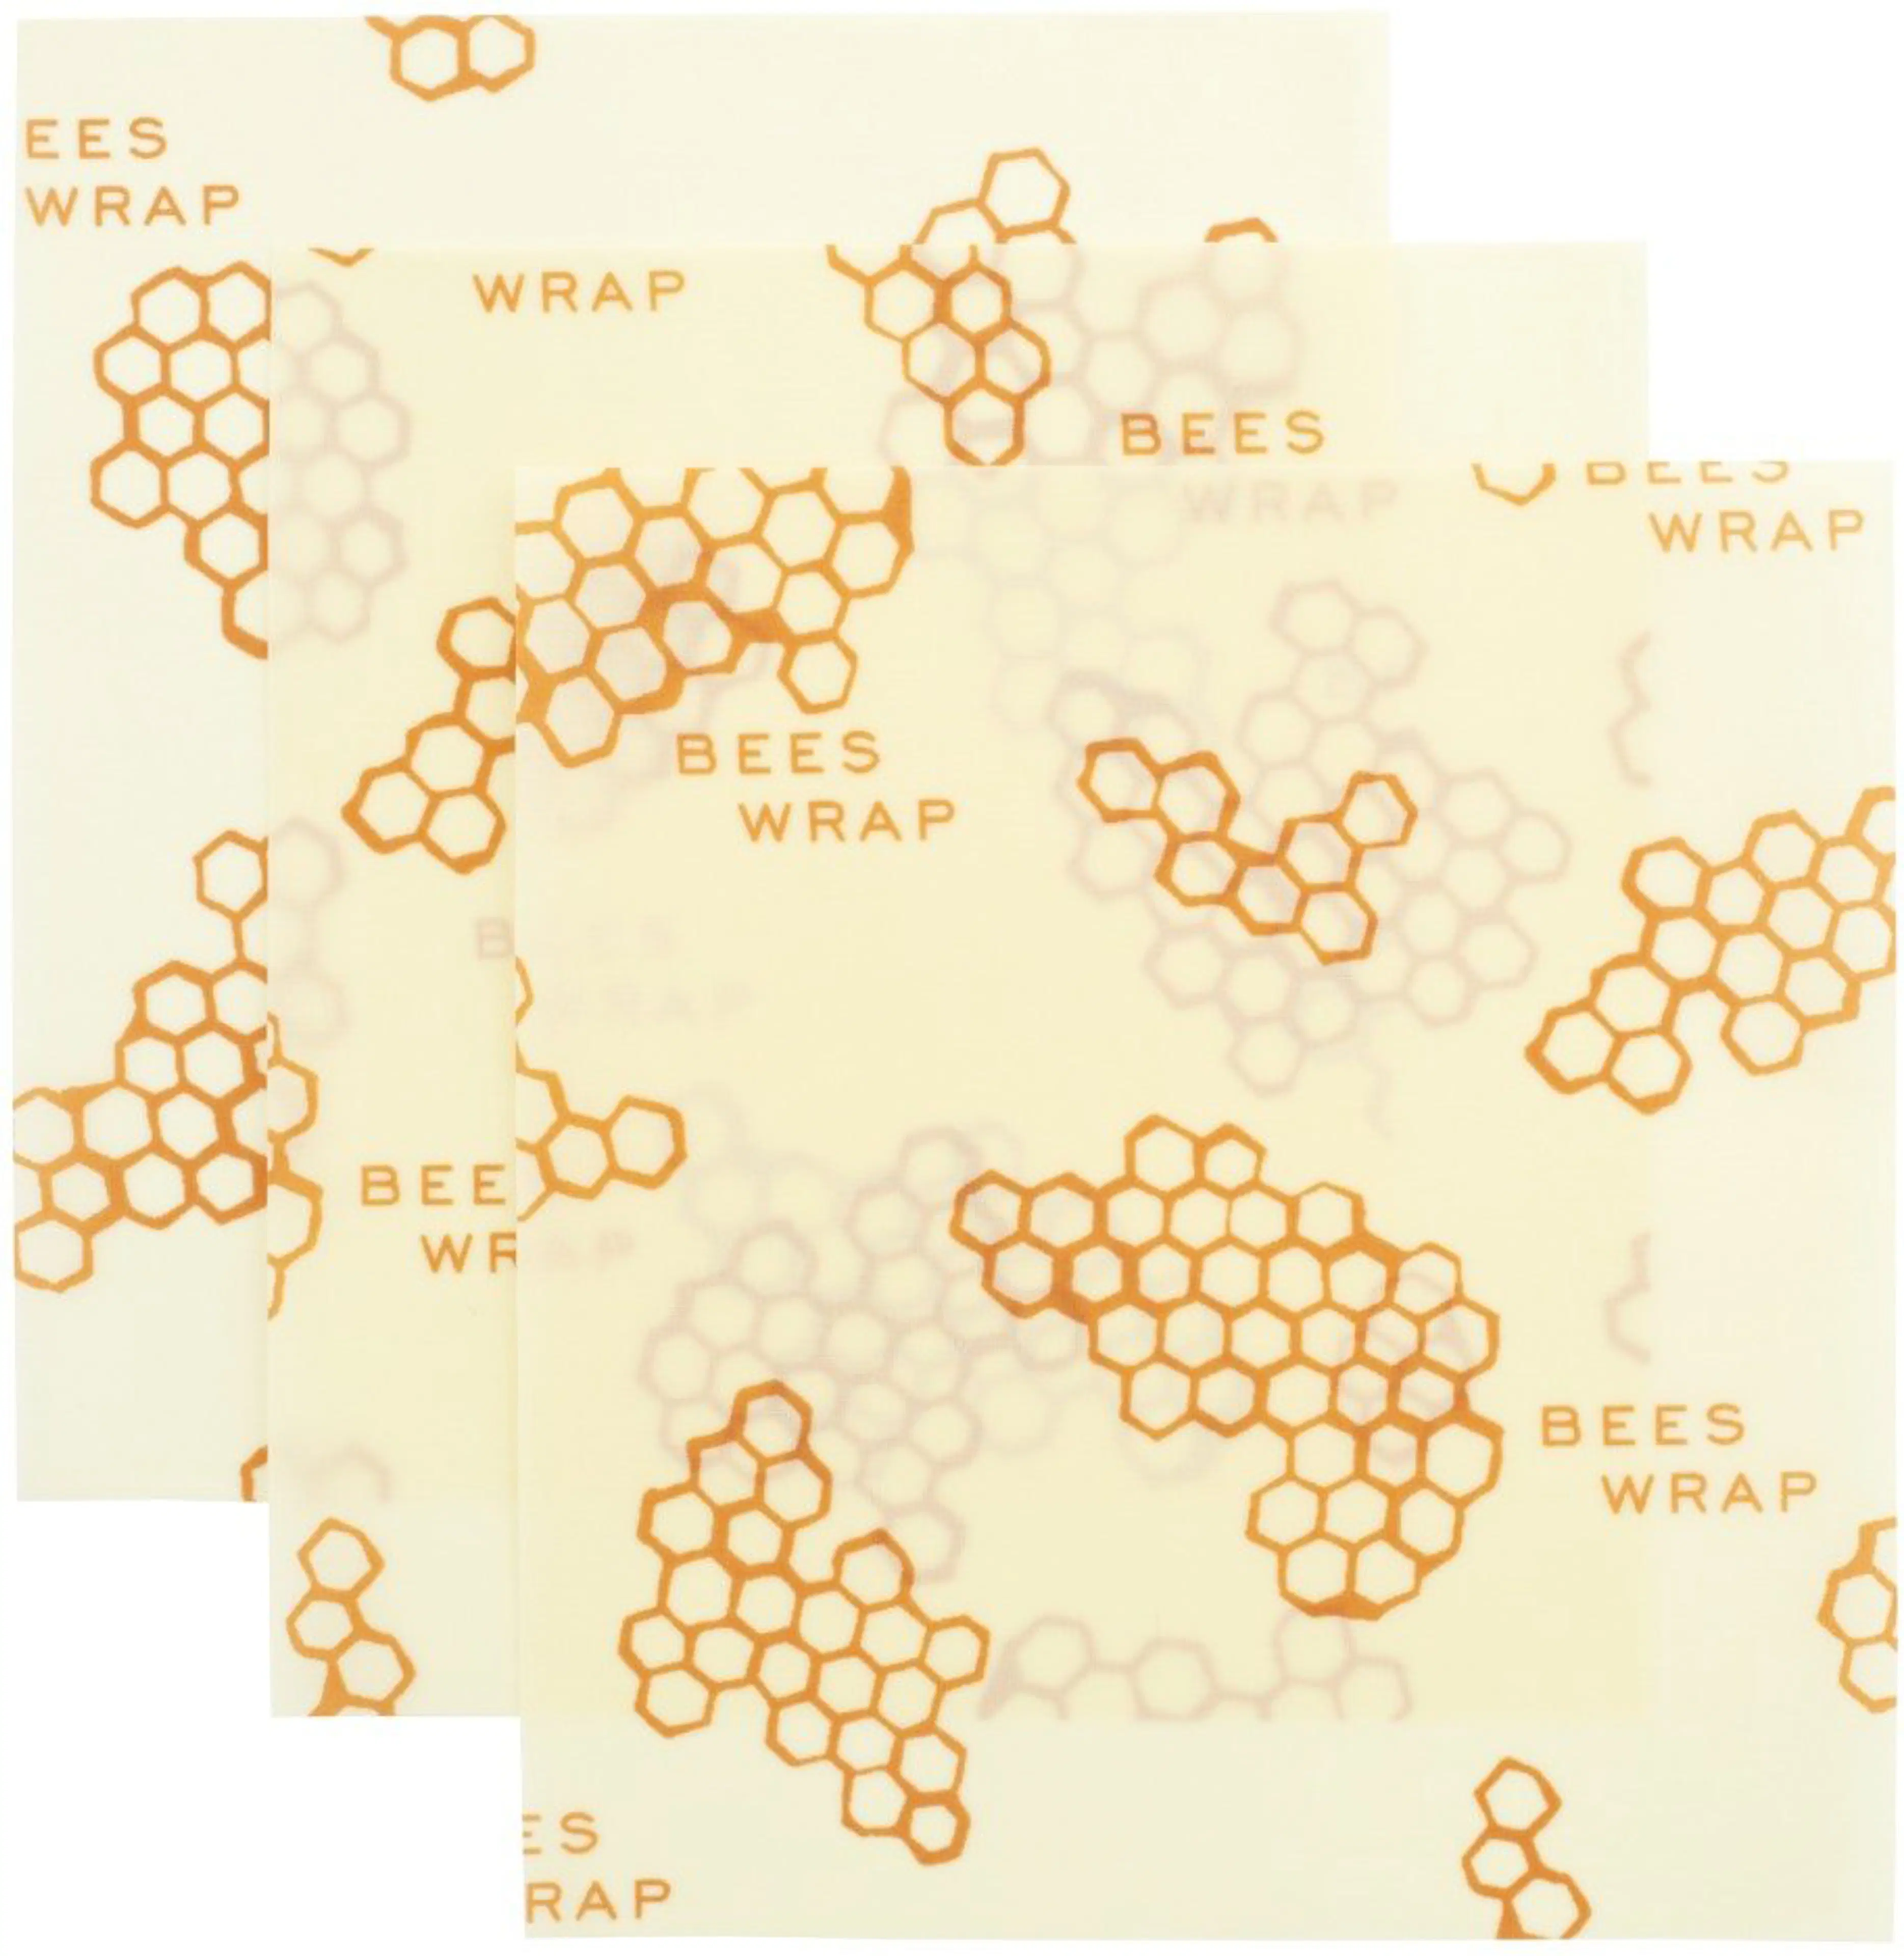 Bee’s Wrap mehiläisvahakääre M 3kpl/pkt